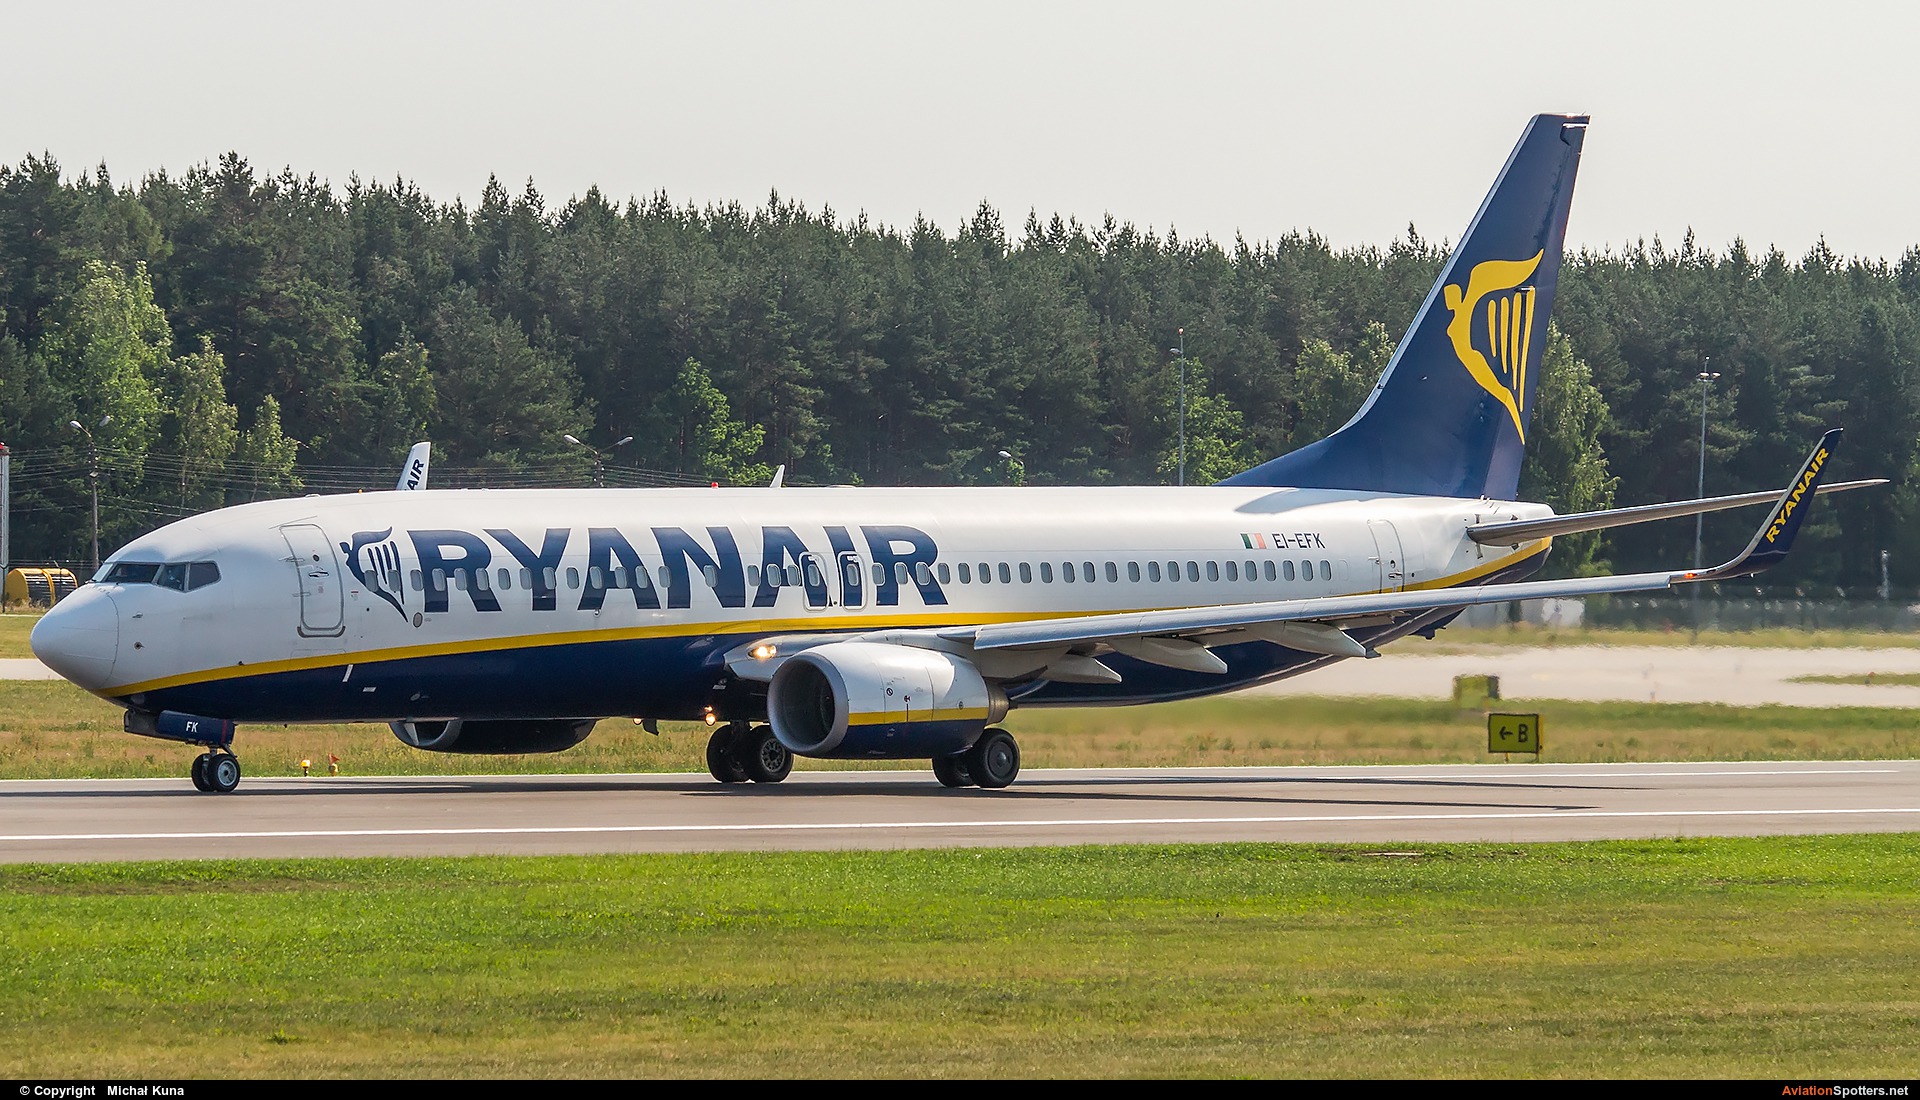 Ryanair  -  737-8AS  (EI-EFK) By Michał Kuna (big)